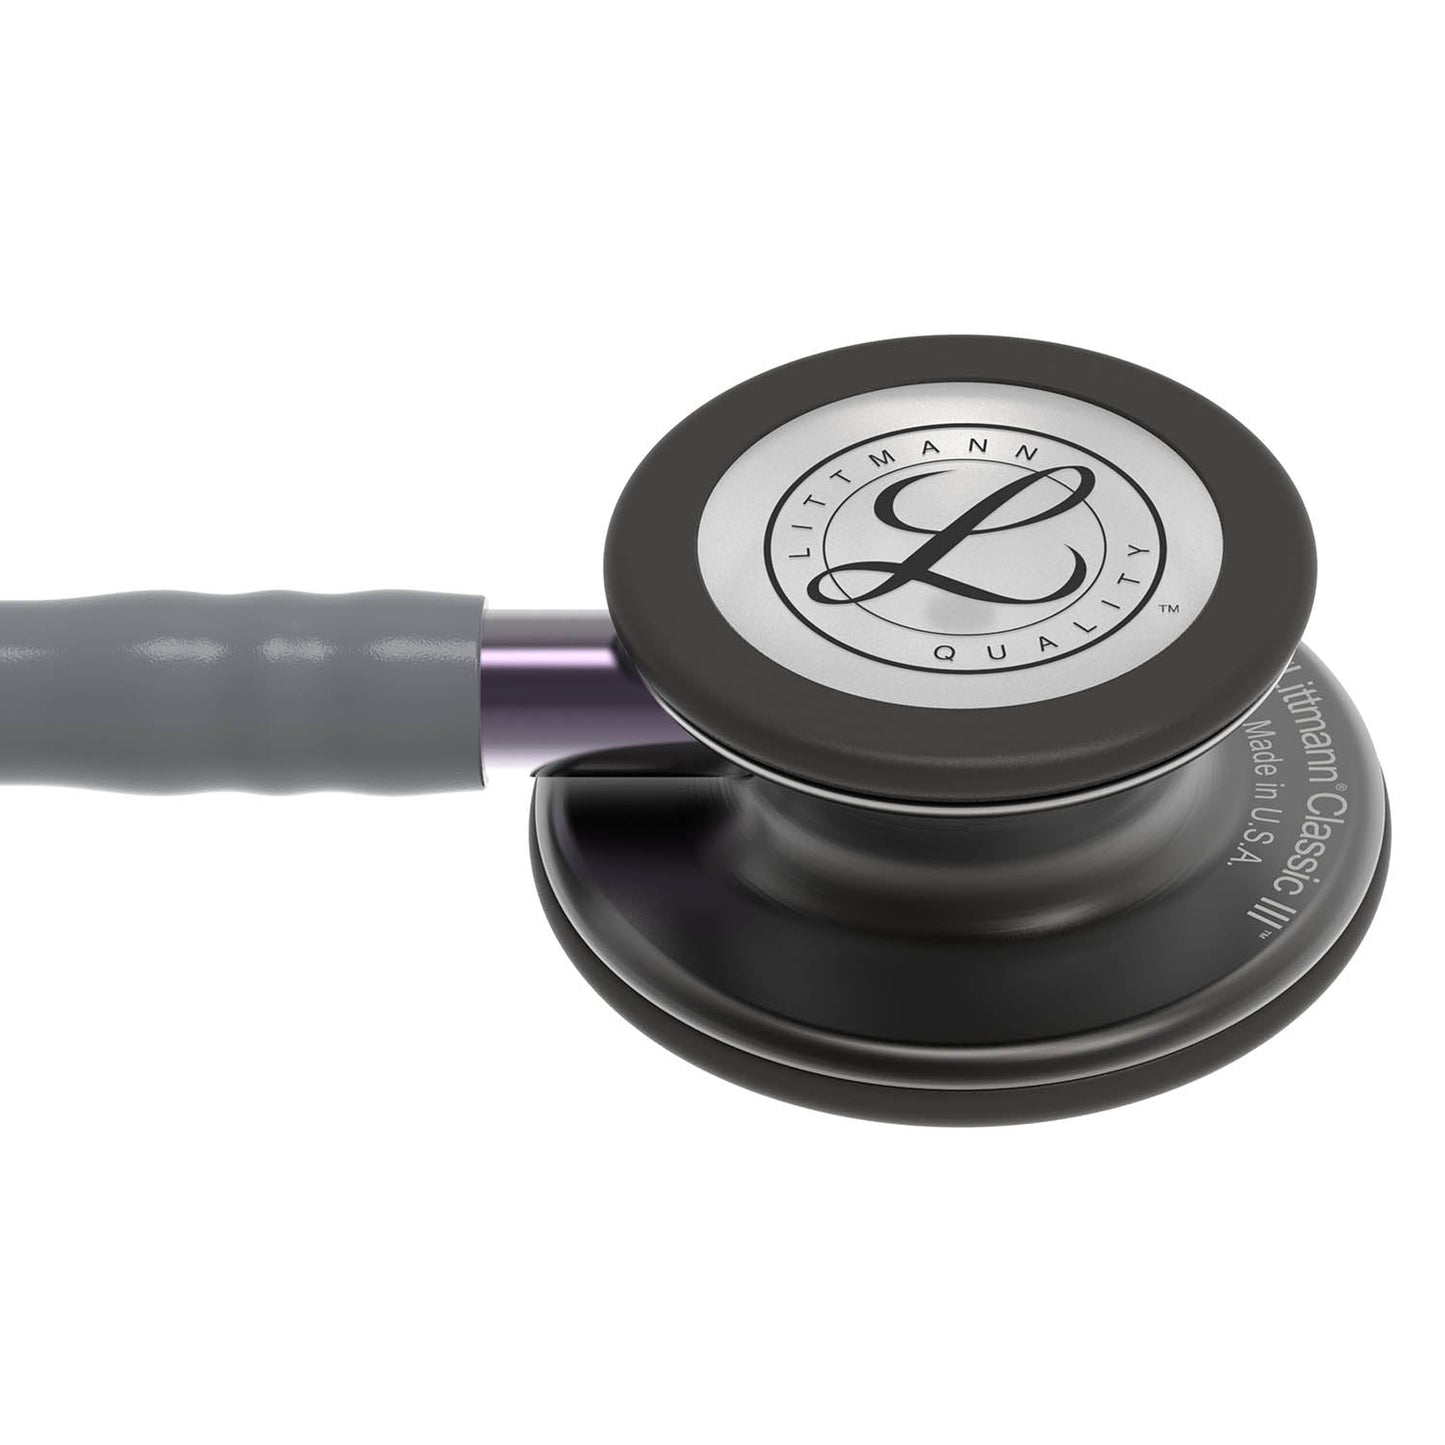 3M™ Littmann® Classic III™ Fonendoscopio para monitorización, campana de acabado en color gris humo, tubo gris, vástago morado grisáceo y auricular color gris humo, 68,5 cm, 5873